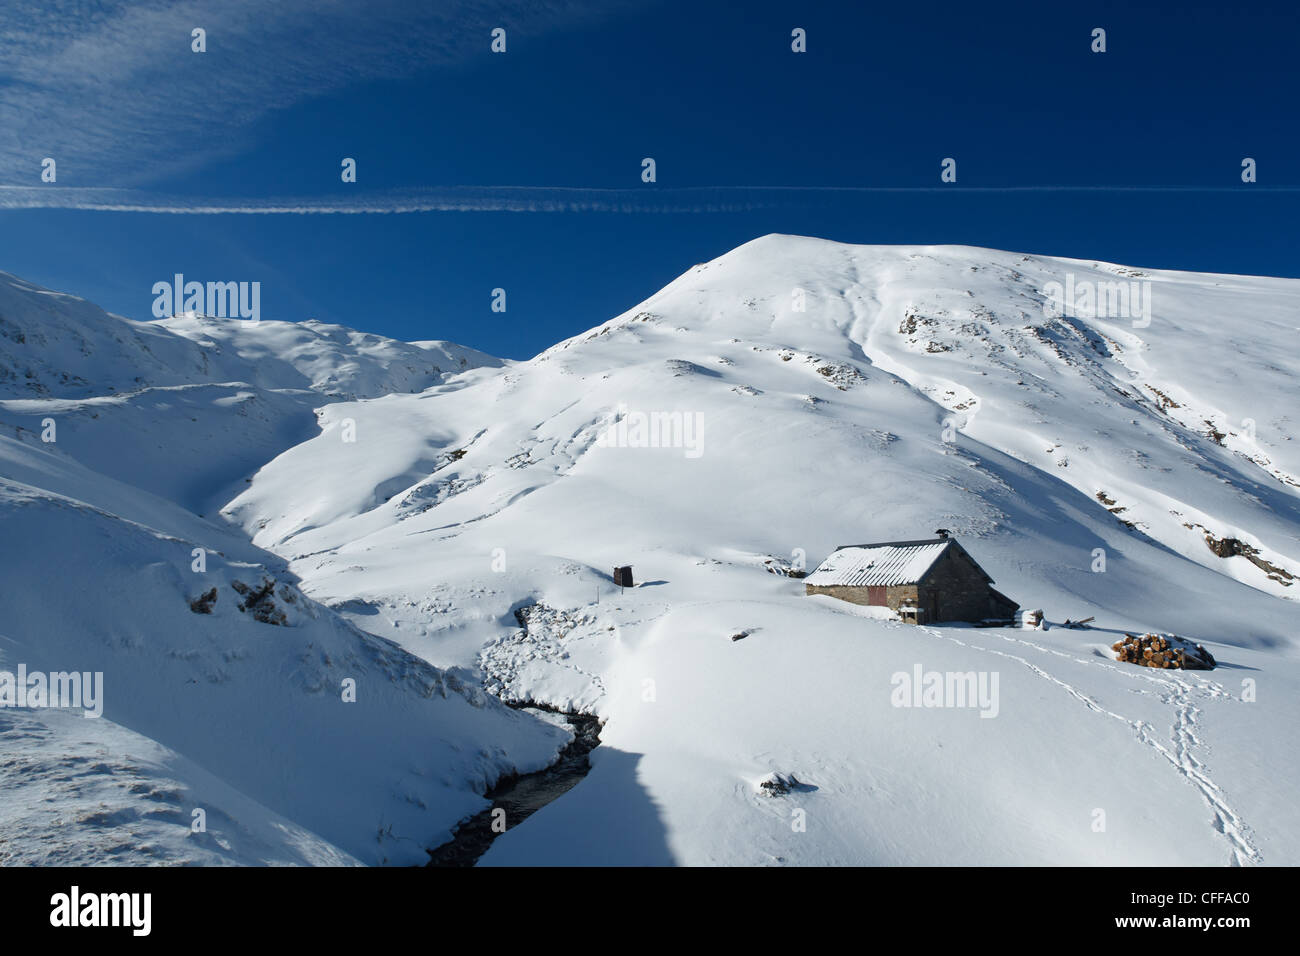 Berghütte in verschneite Berglandschaft in der Nähe von Col de Pause, Ariege, Pyrenäen, Frankreich. Stockfoto